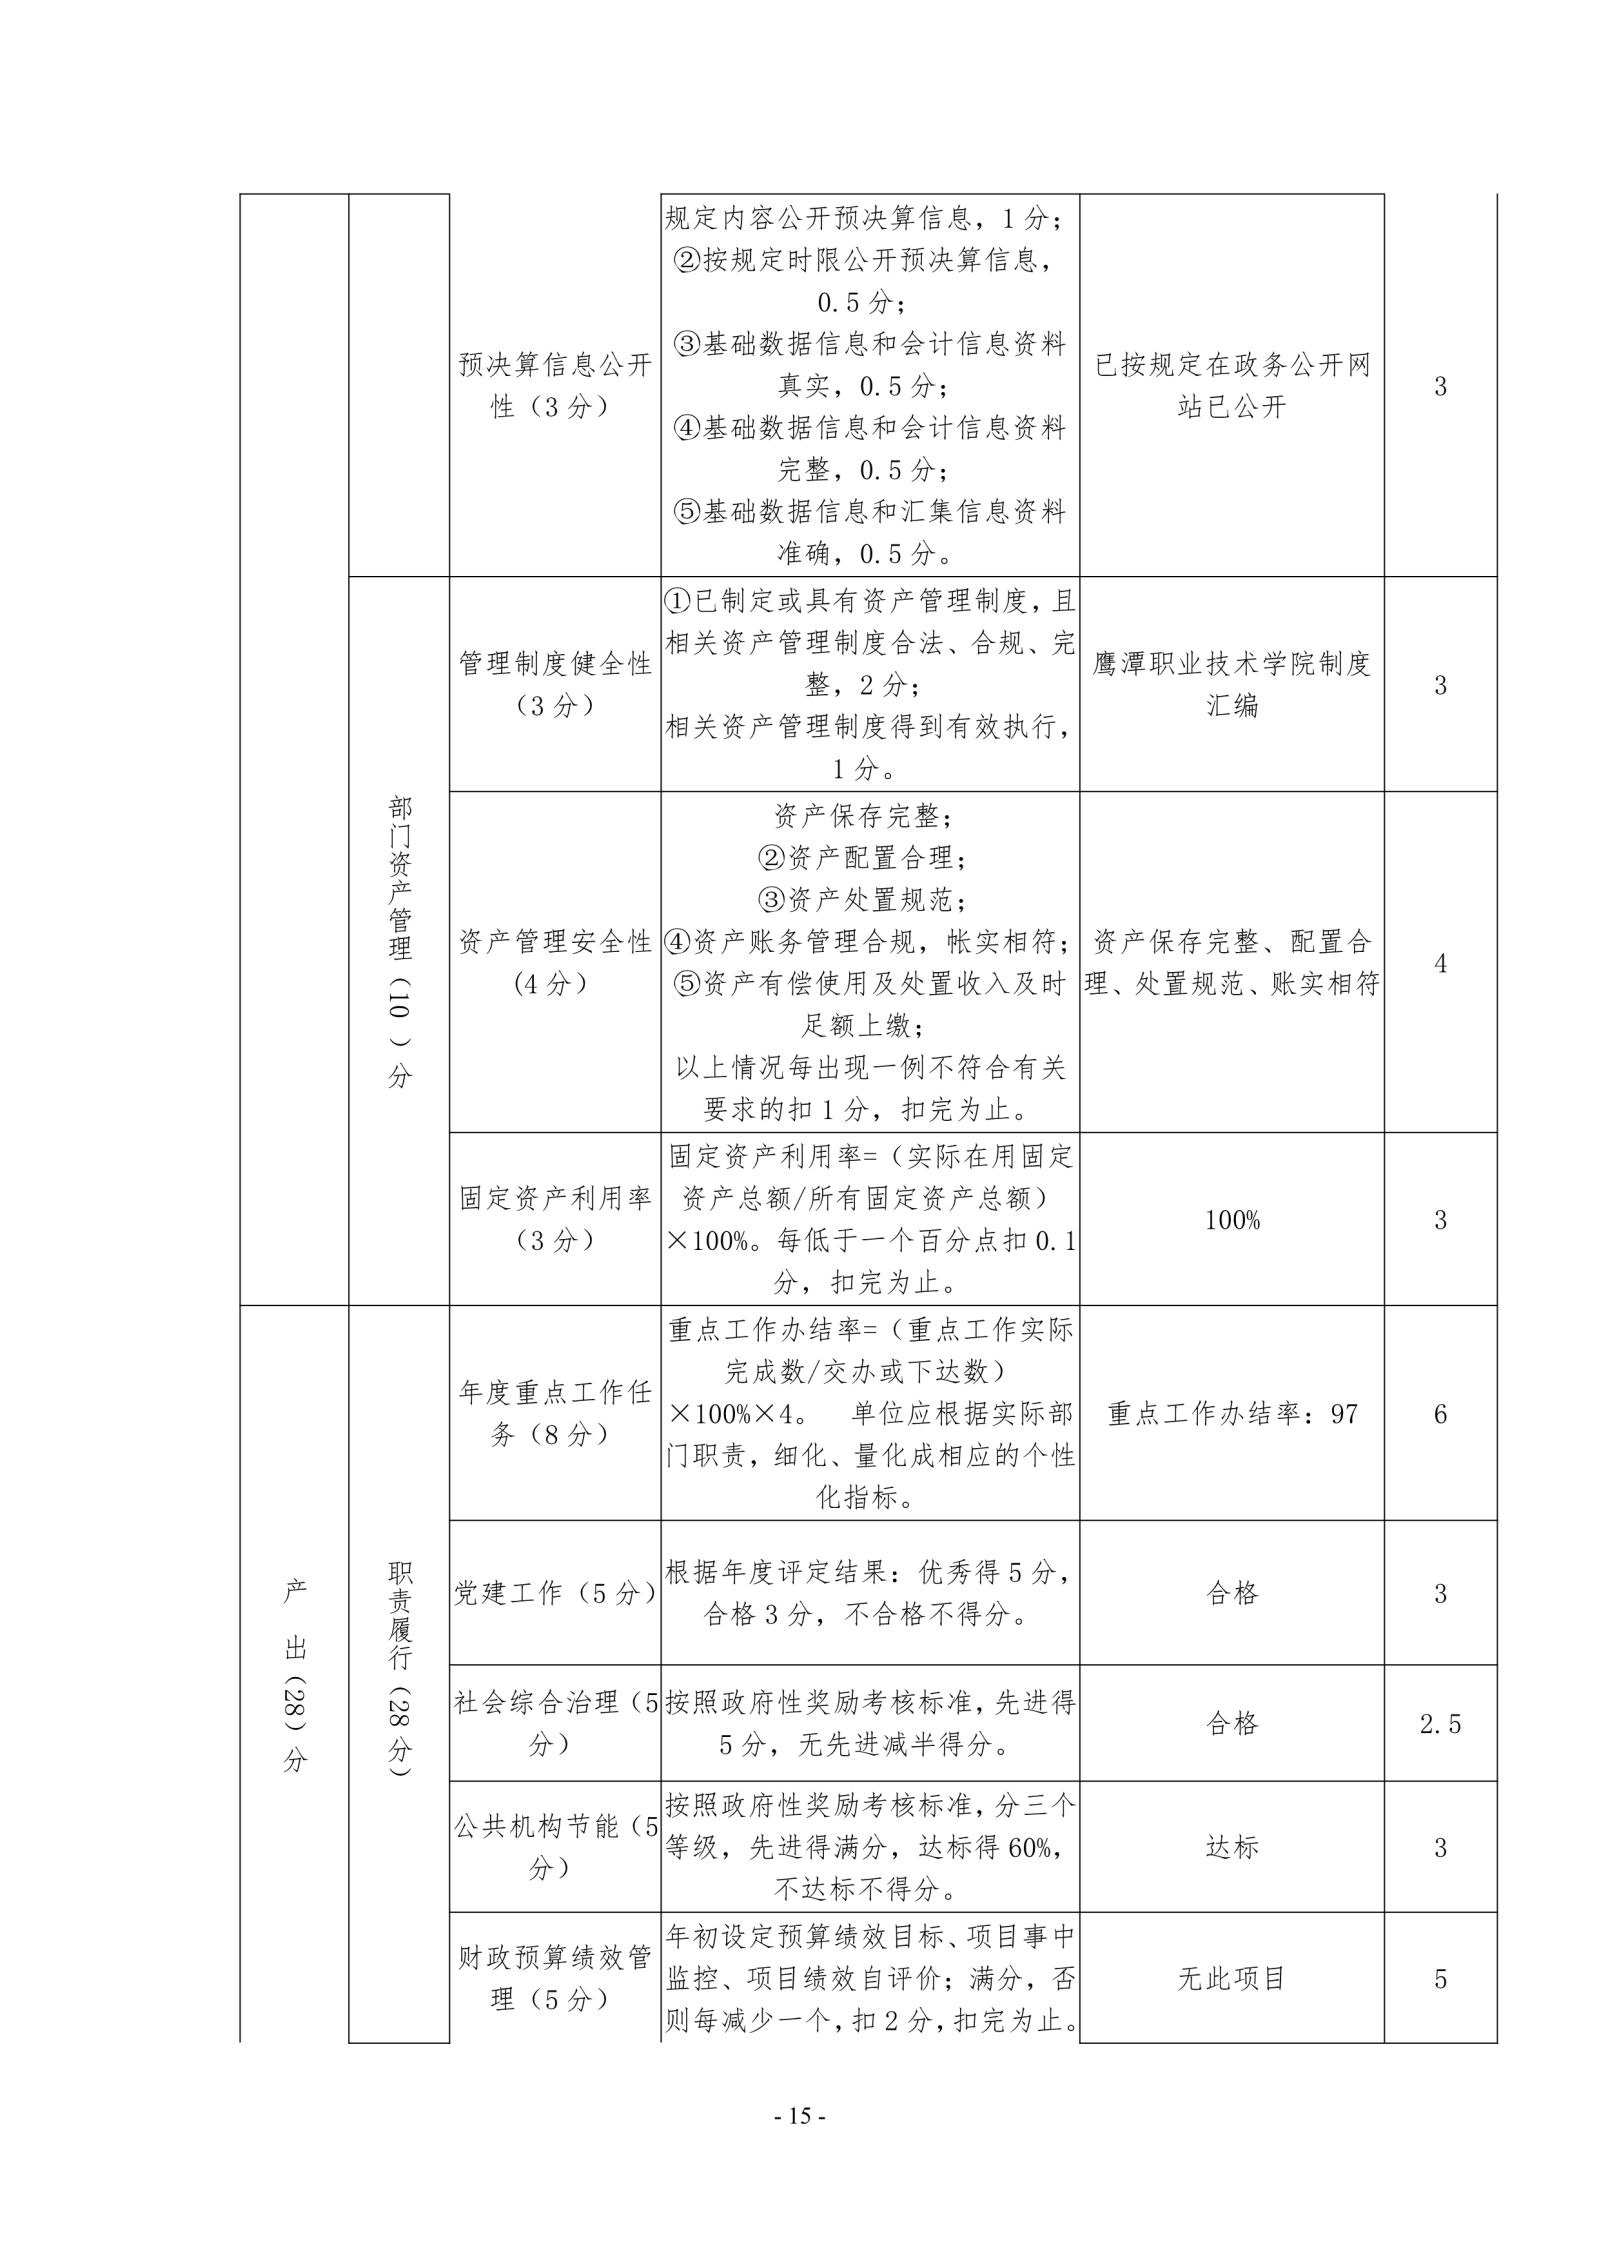 鹰潭职业技术学院2019年度部门决算_image15_out_1